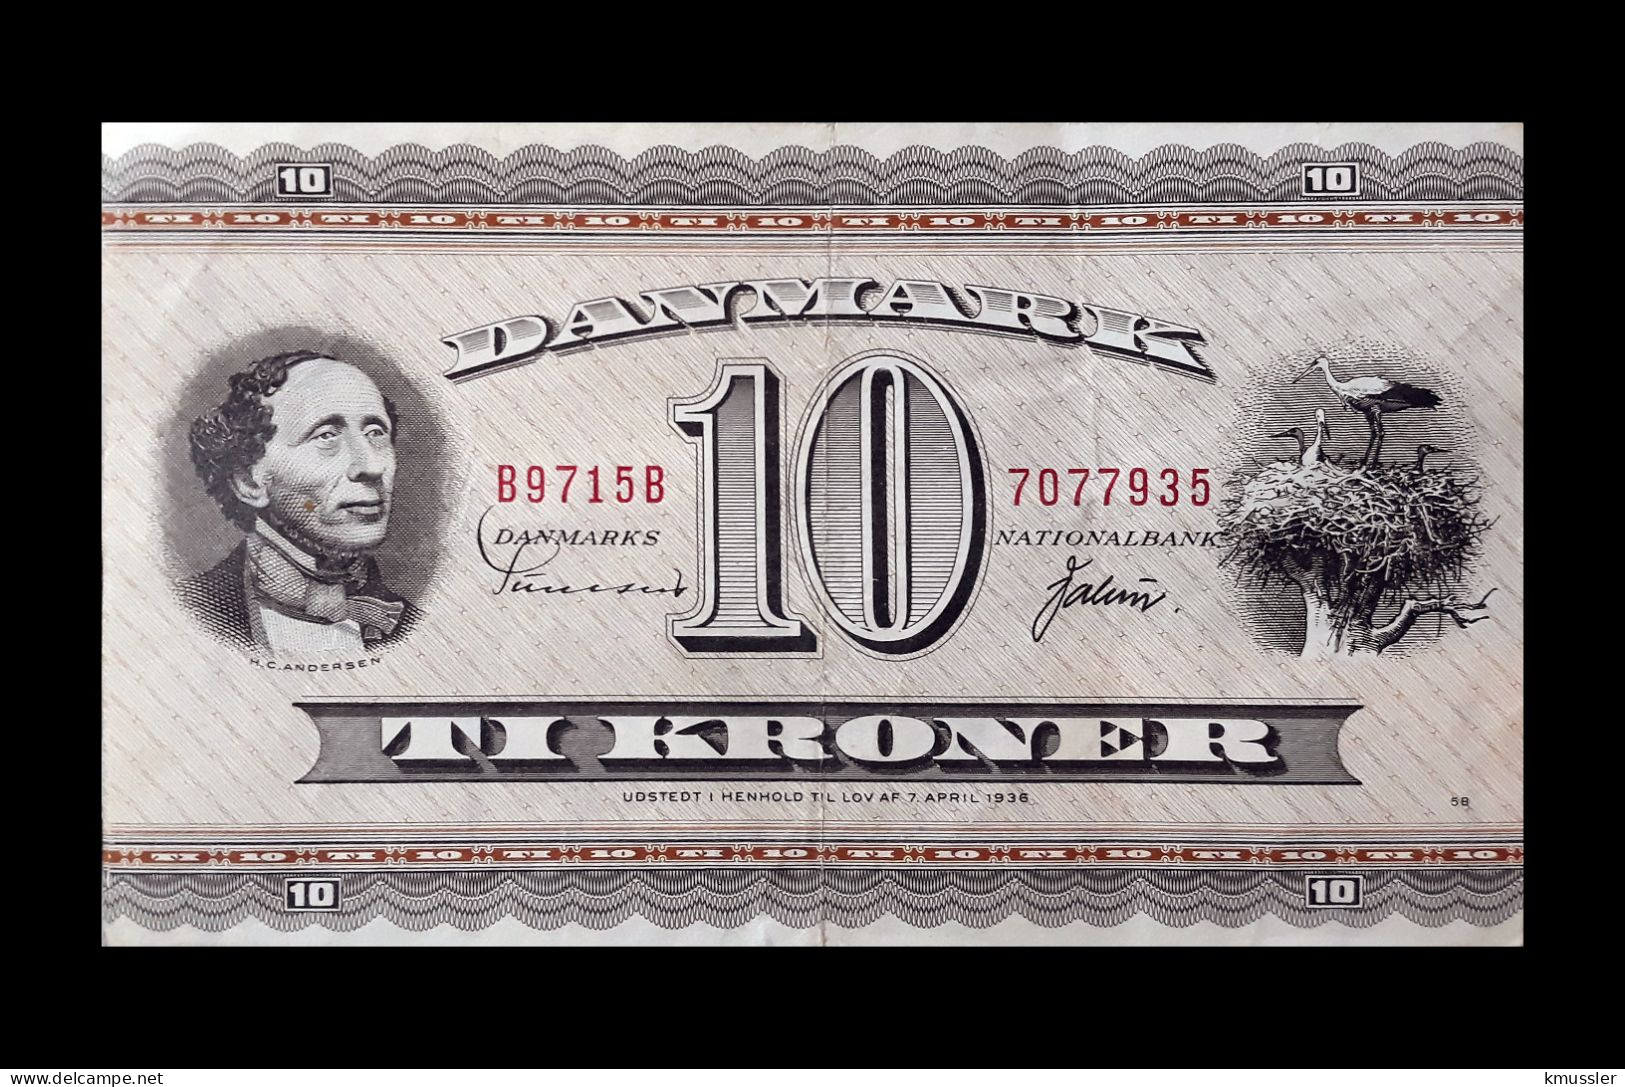 # # # Banknote Dänemark (Denmark) 10 Kroner 1936 # # # - Danemark